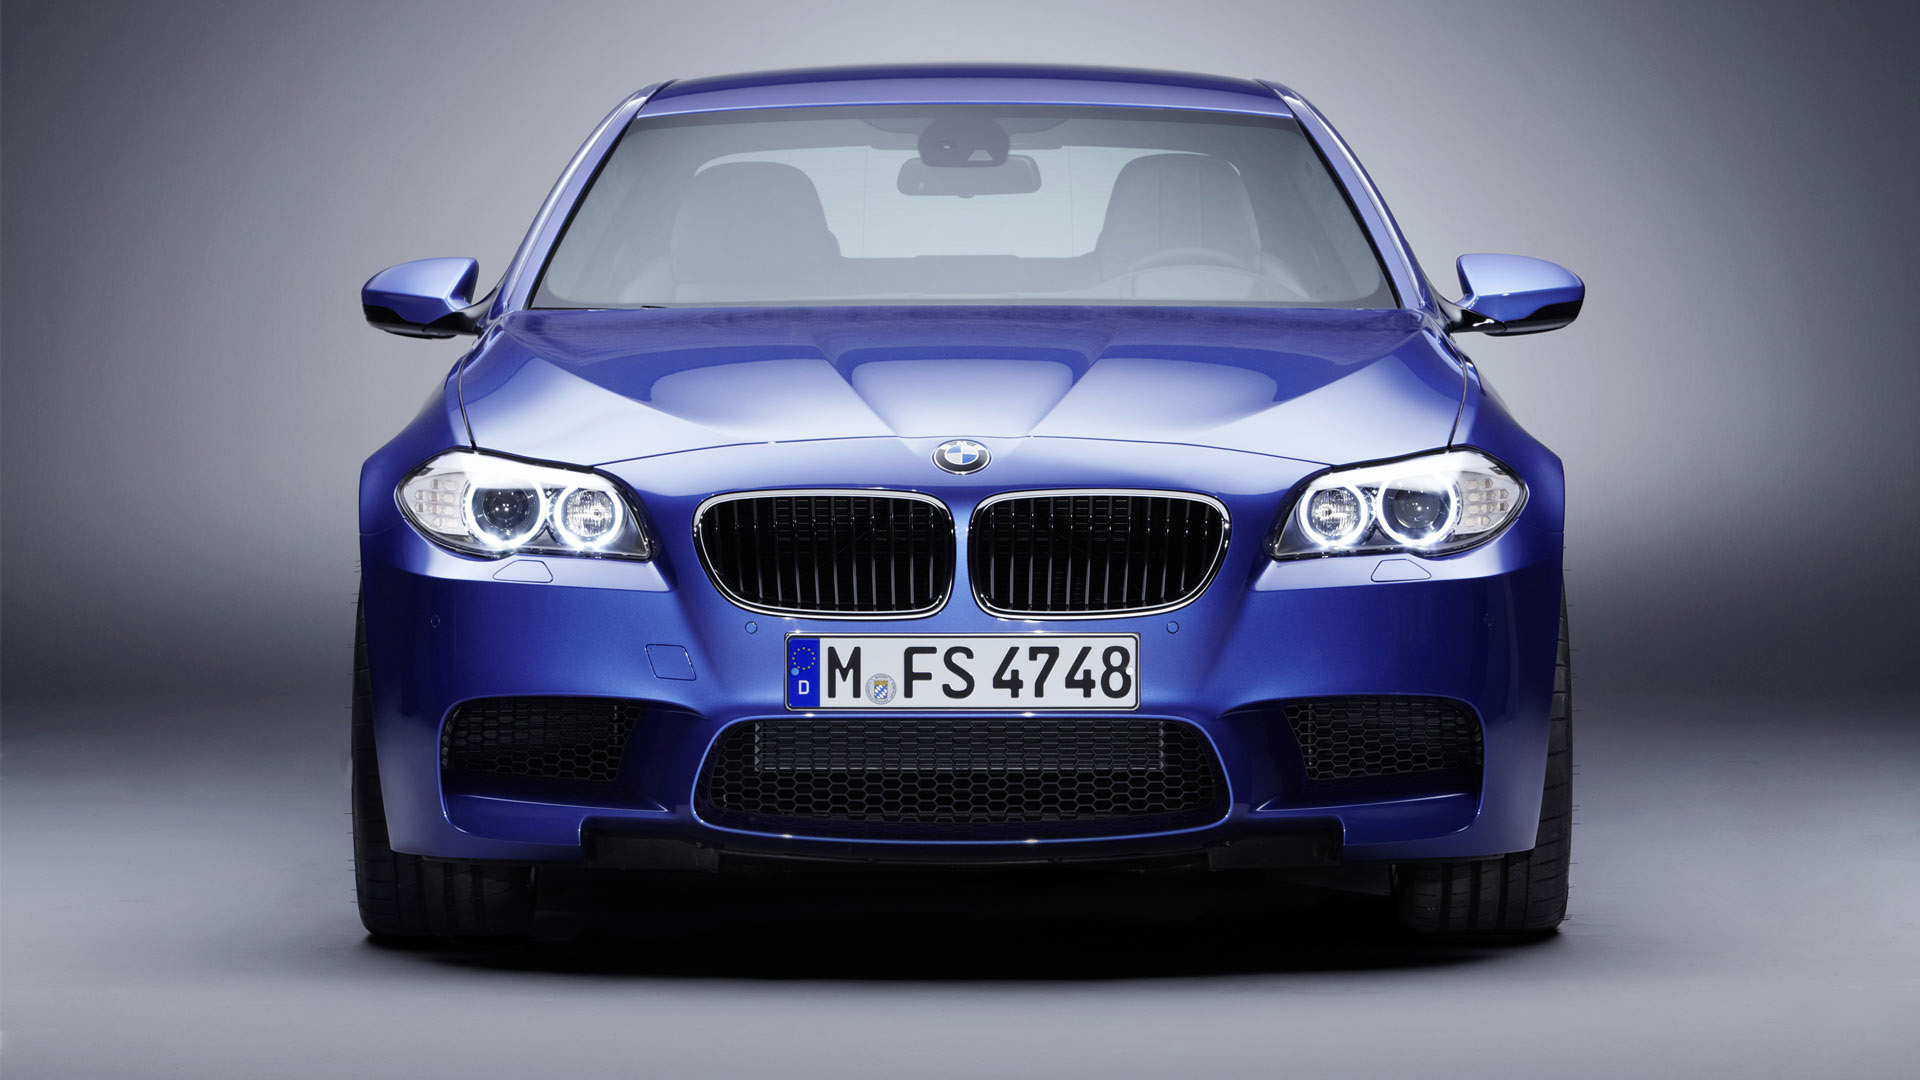  2012 BMW M5 Wallpaper.